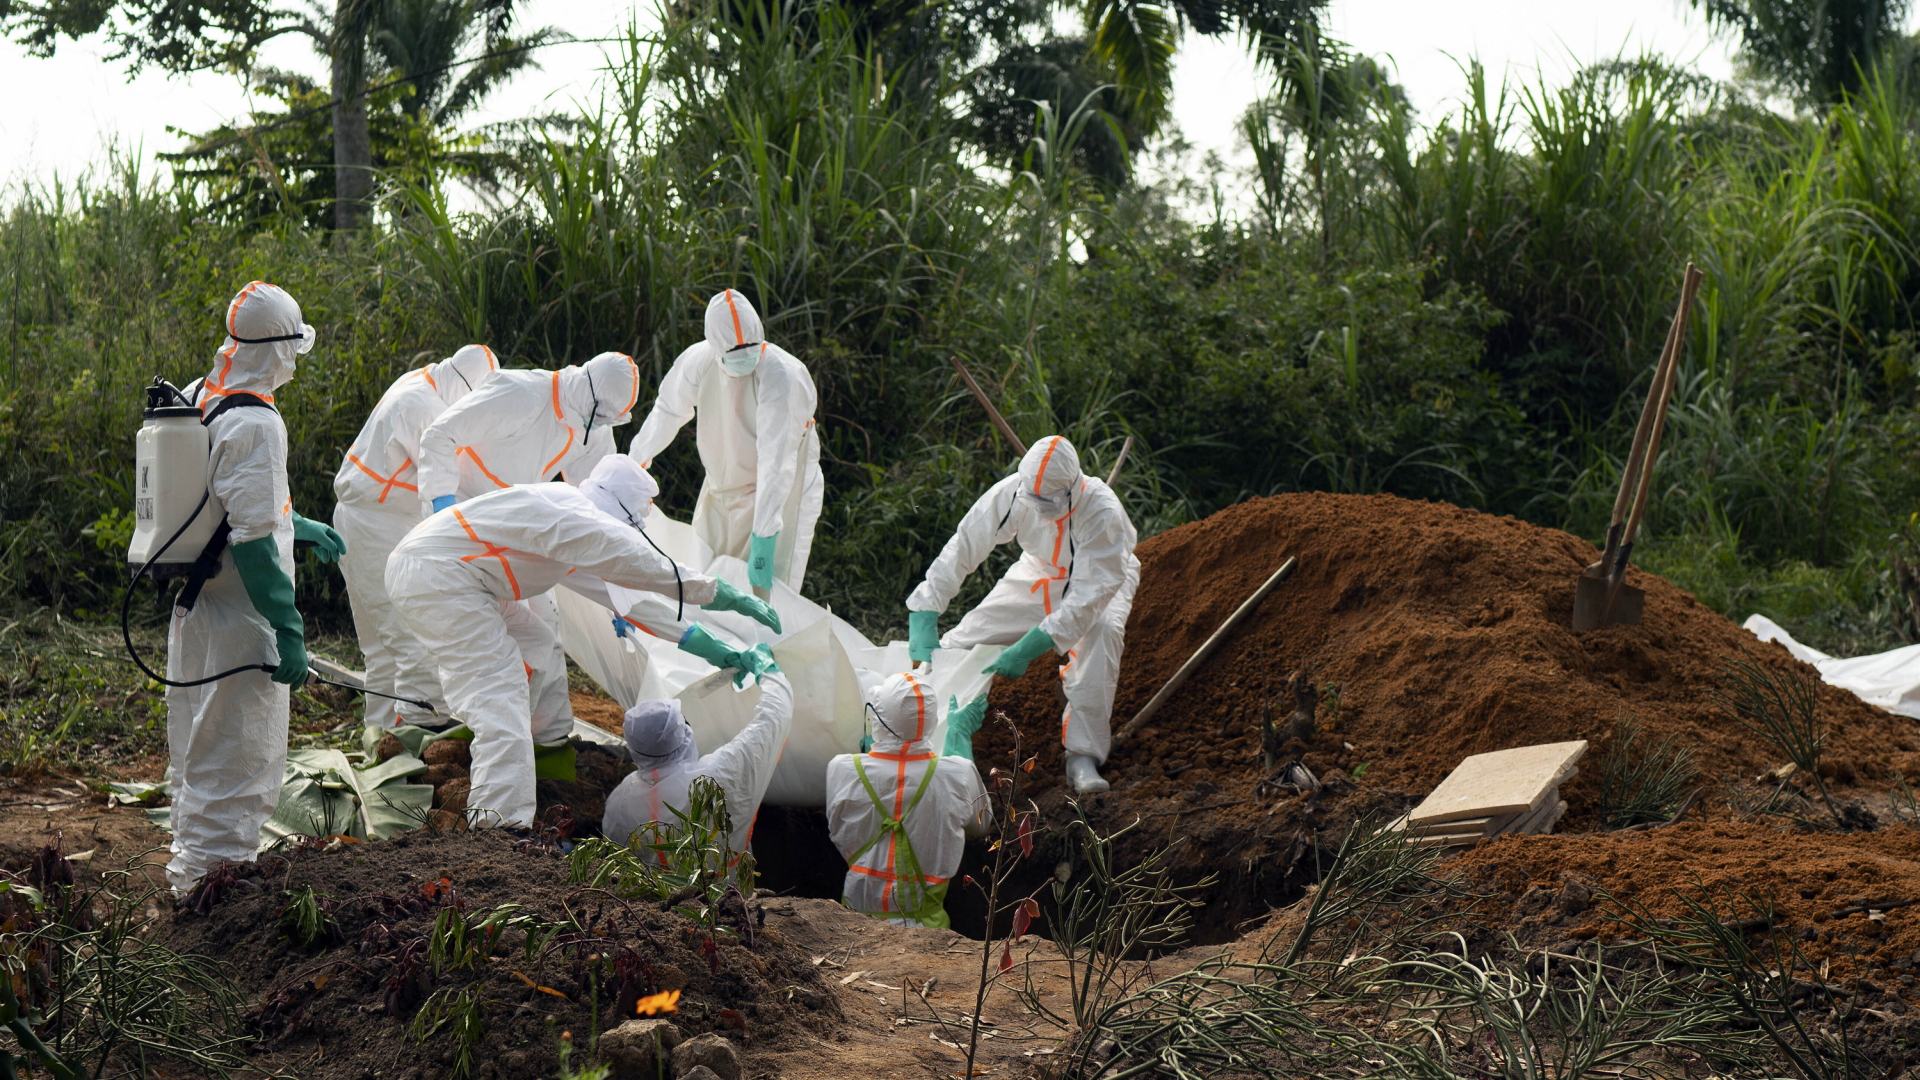 Hilfskräfte in Schutzanzügen beerdigen im Juli 2019 ein Ebola-Opfer im Kongo.